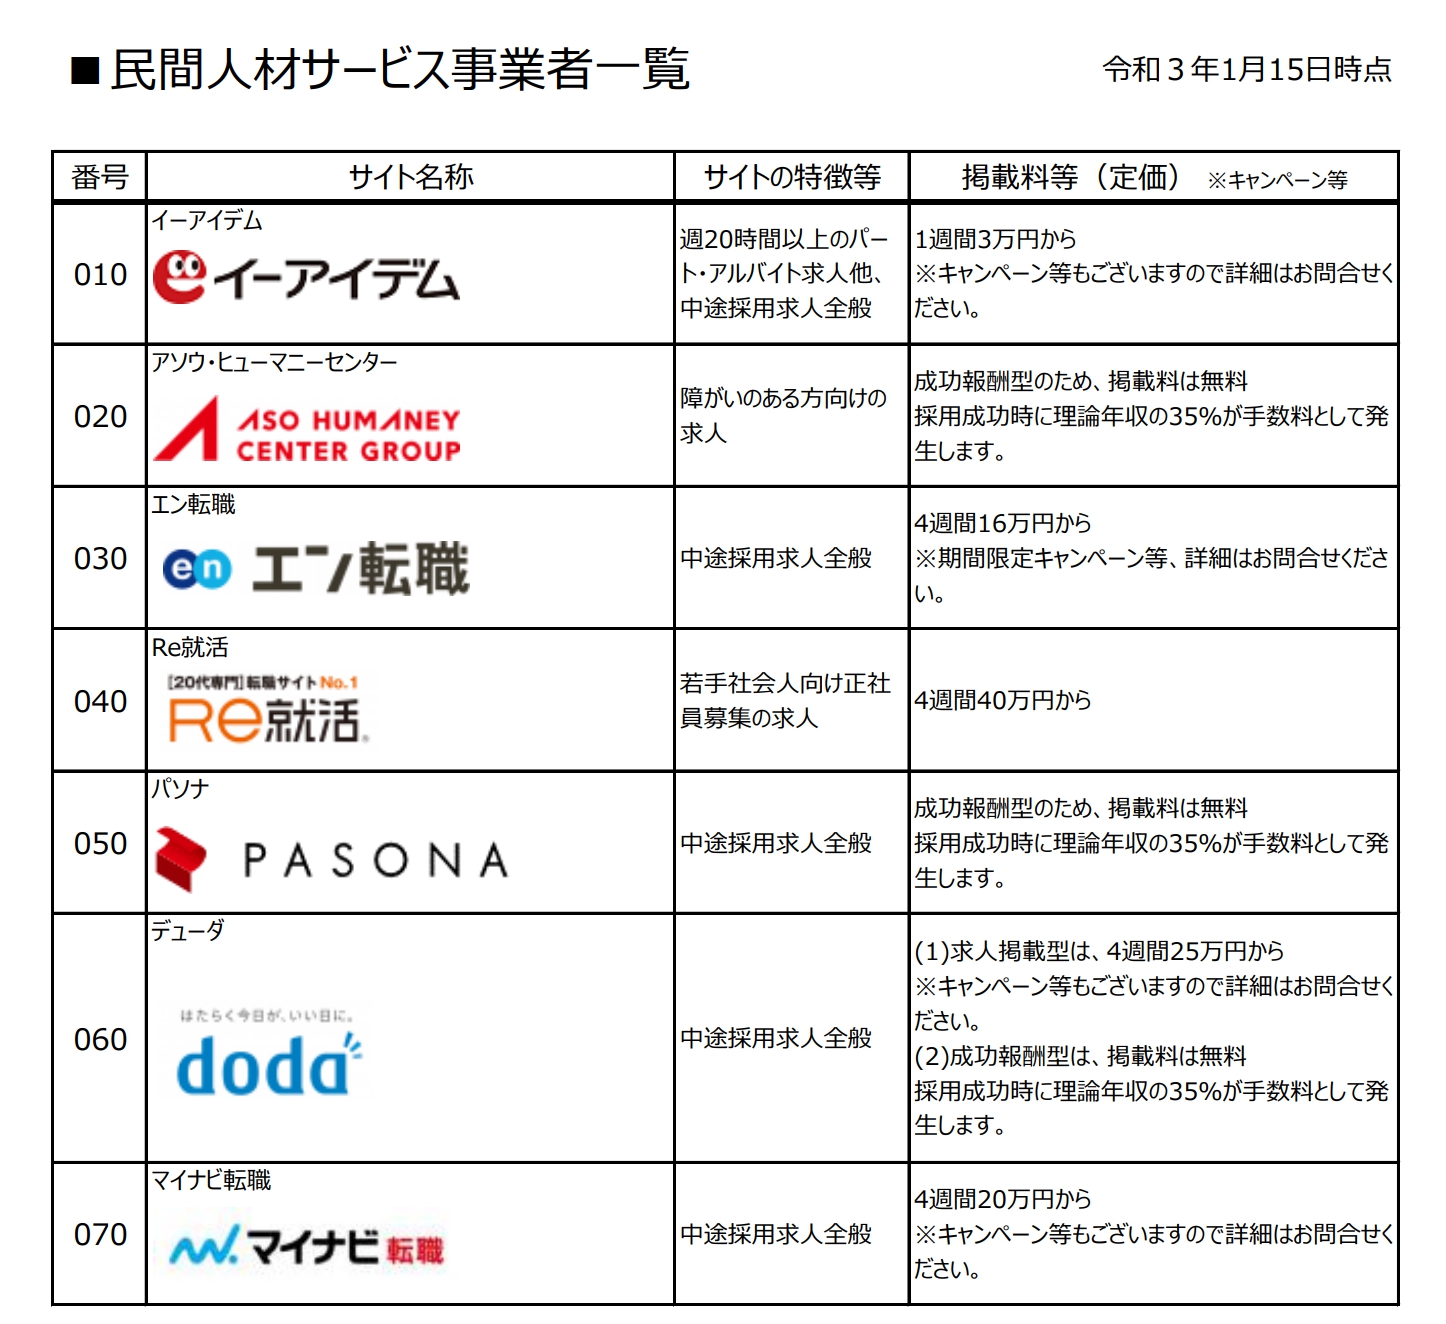 【更新】 大阪府雇用促進支援金の対象求人広告　一覧